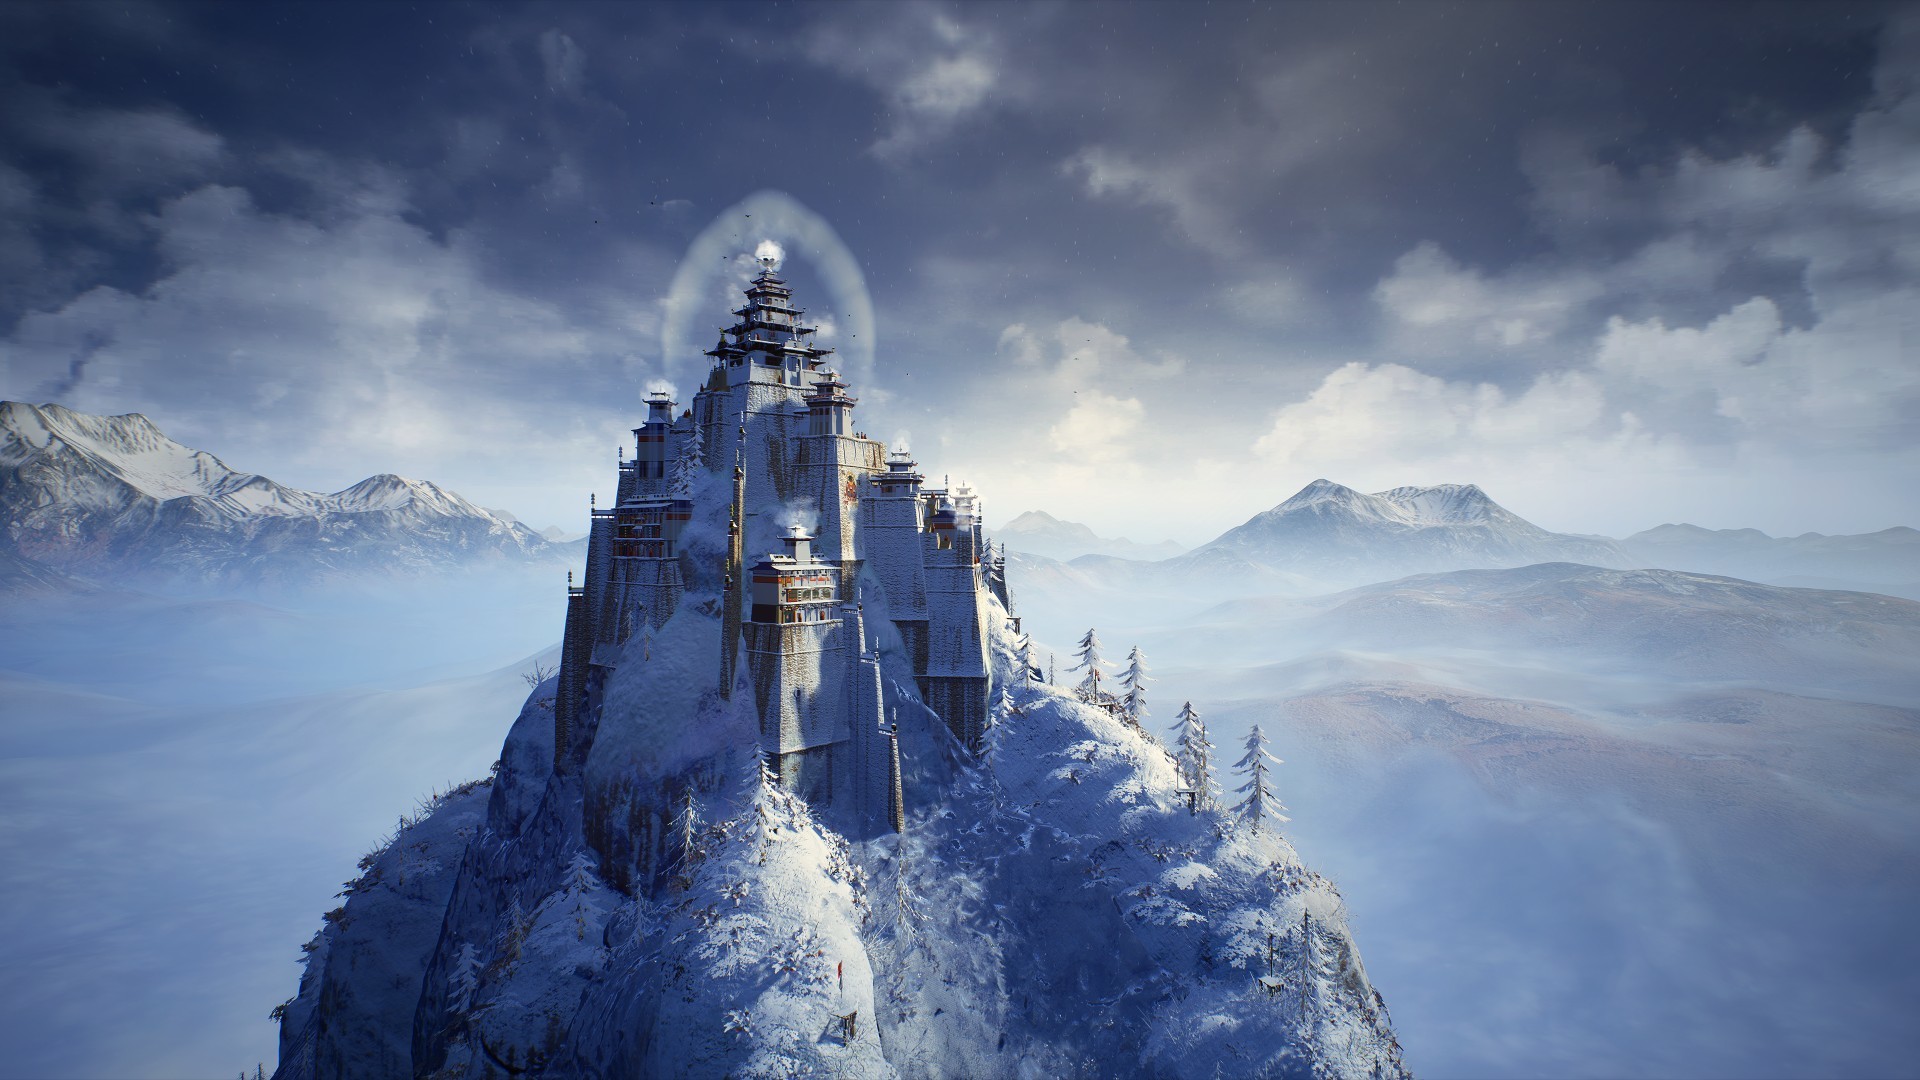 PC show山脈城市建造遊戲《峰頂王國》新預告公佈